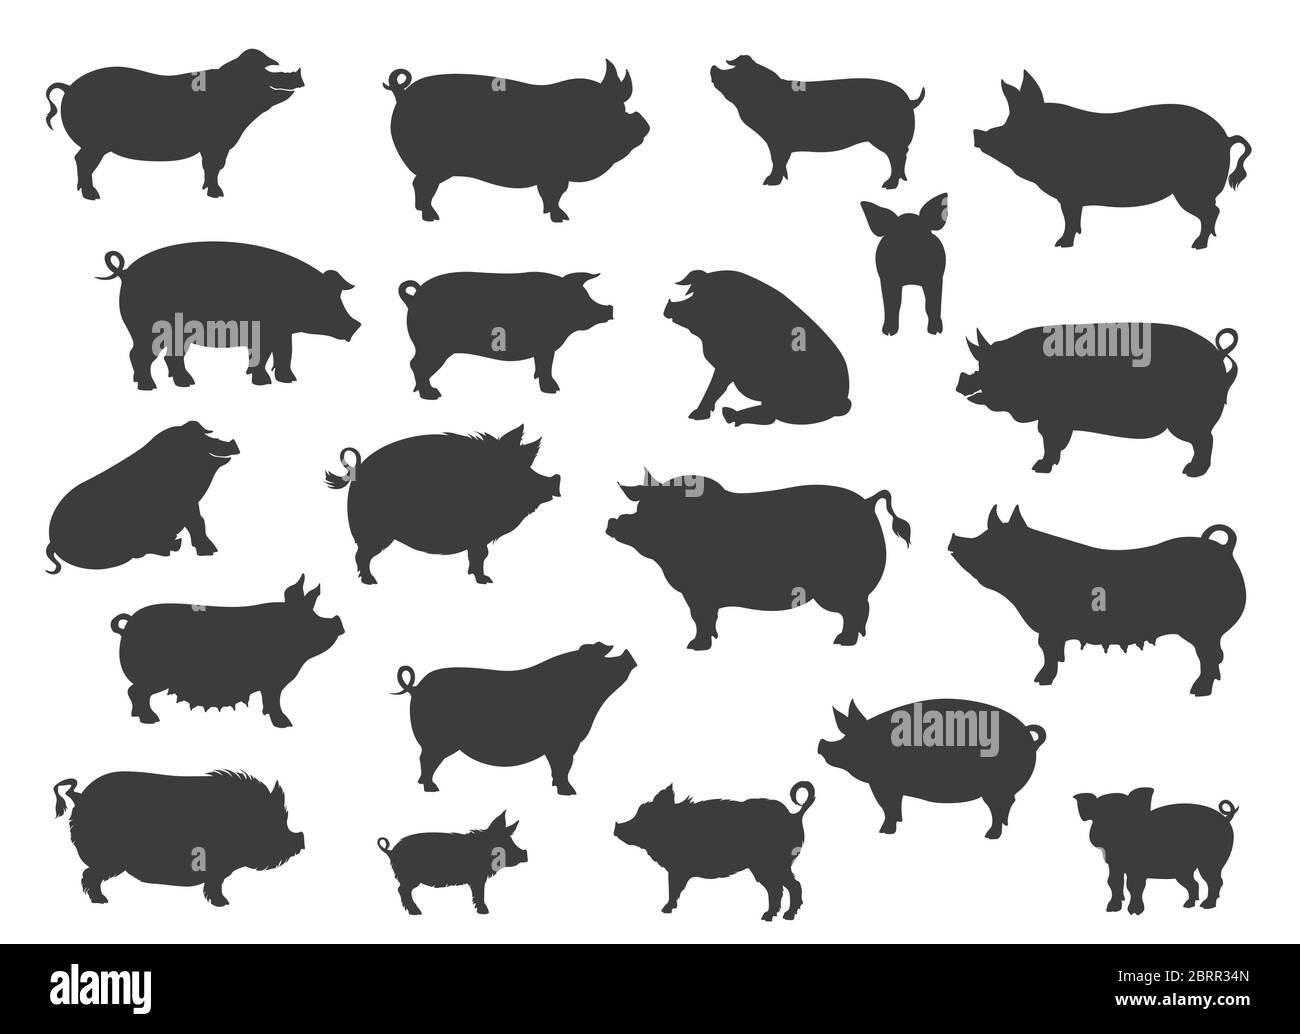 Sammlung von Schweinehassen. Tiere auf dem Bauernhof. Flache Silhouette in Schwarz. Vektorgrafik Stock Vektor